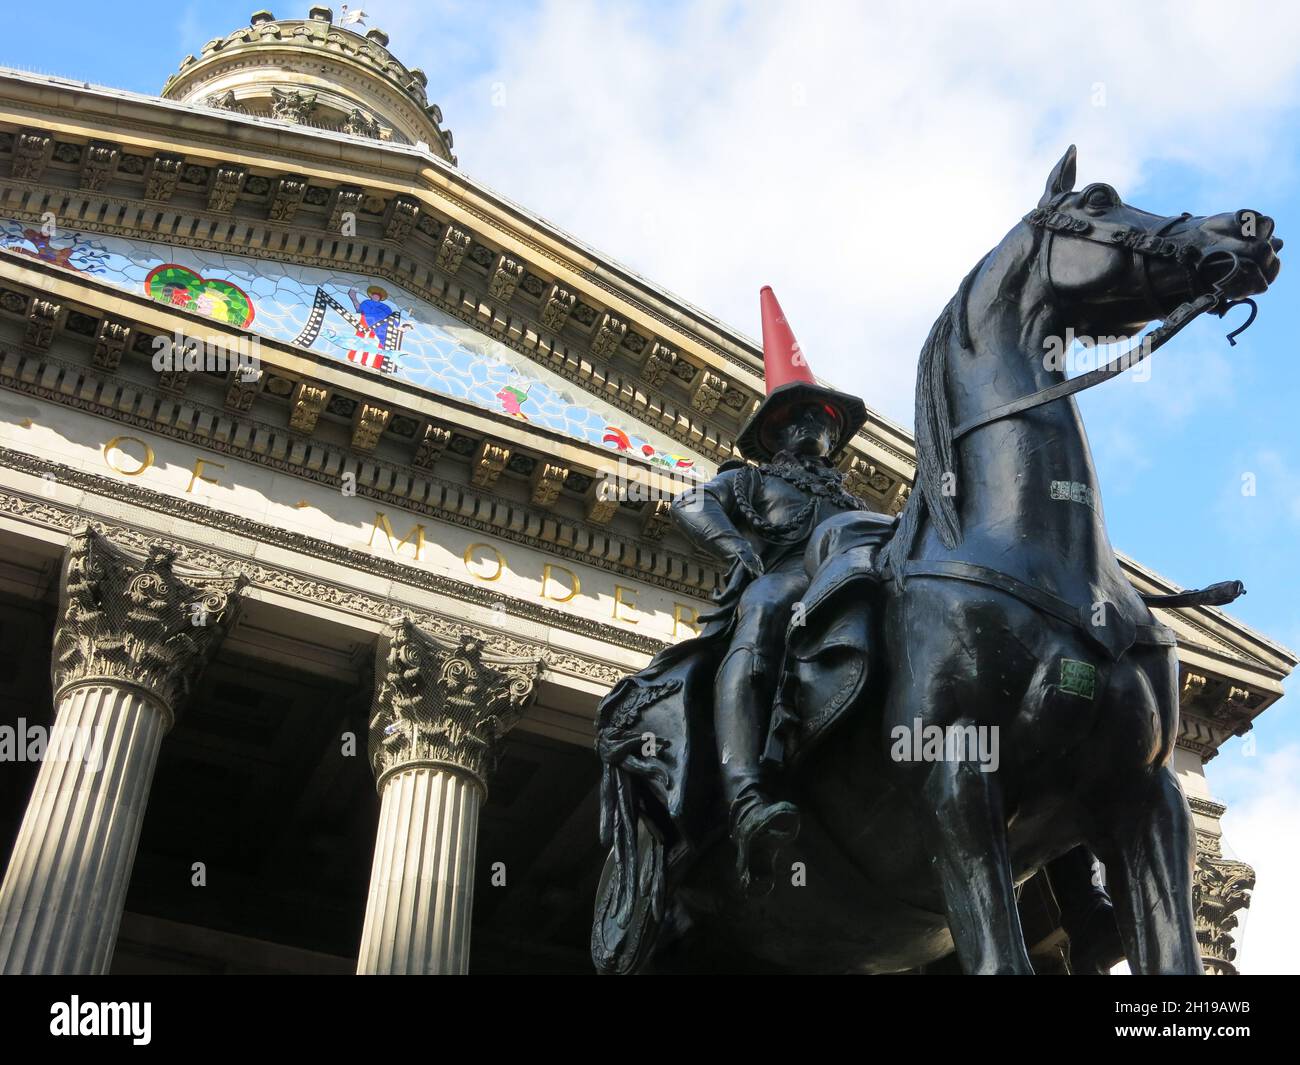 La statue équestre du duc de Wellington sur la place royale d'échange de Glasgow a maintenant un statut culte pour être ornée d'un cône de circulation sur sa tête. Banque D'Images